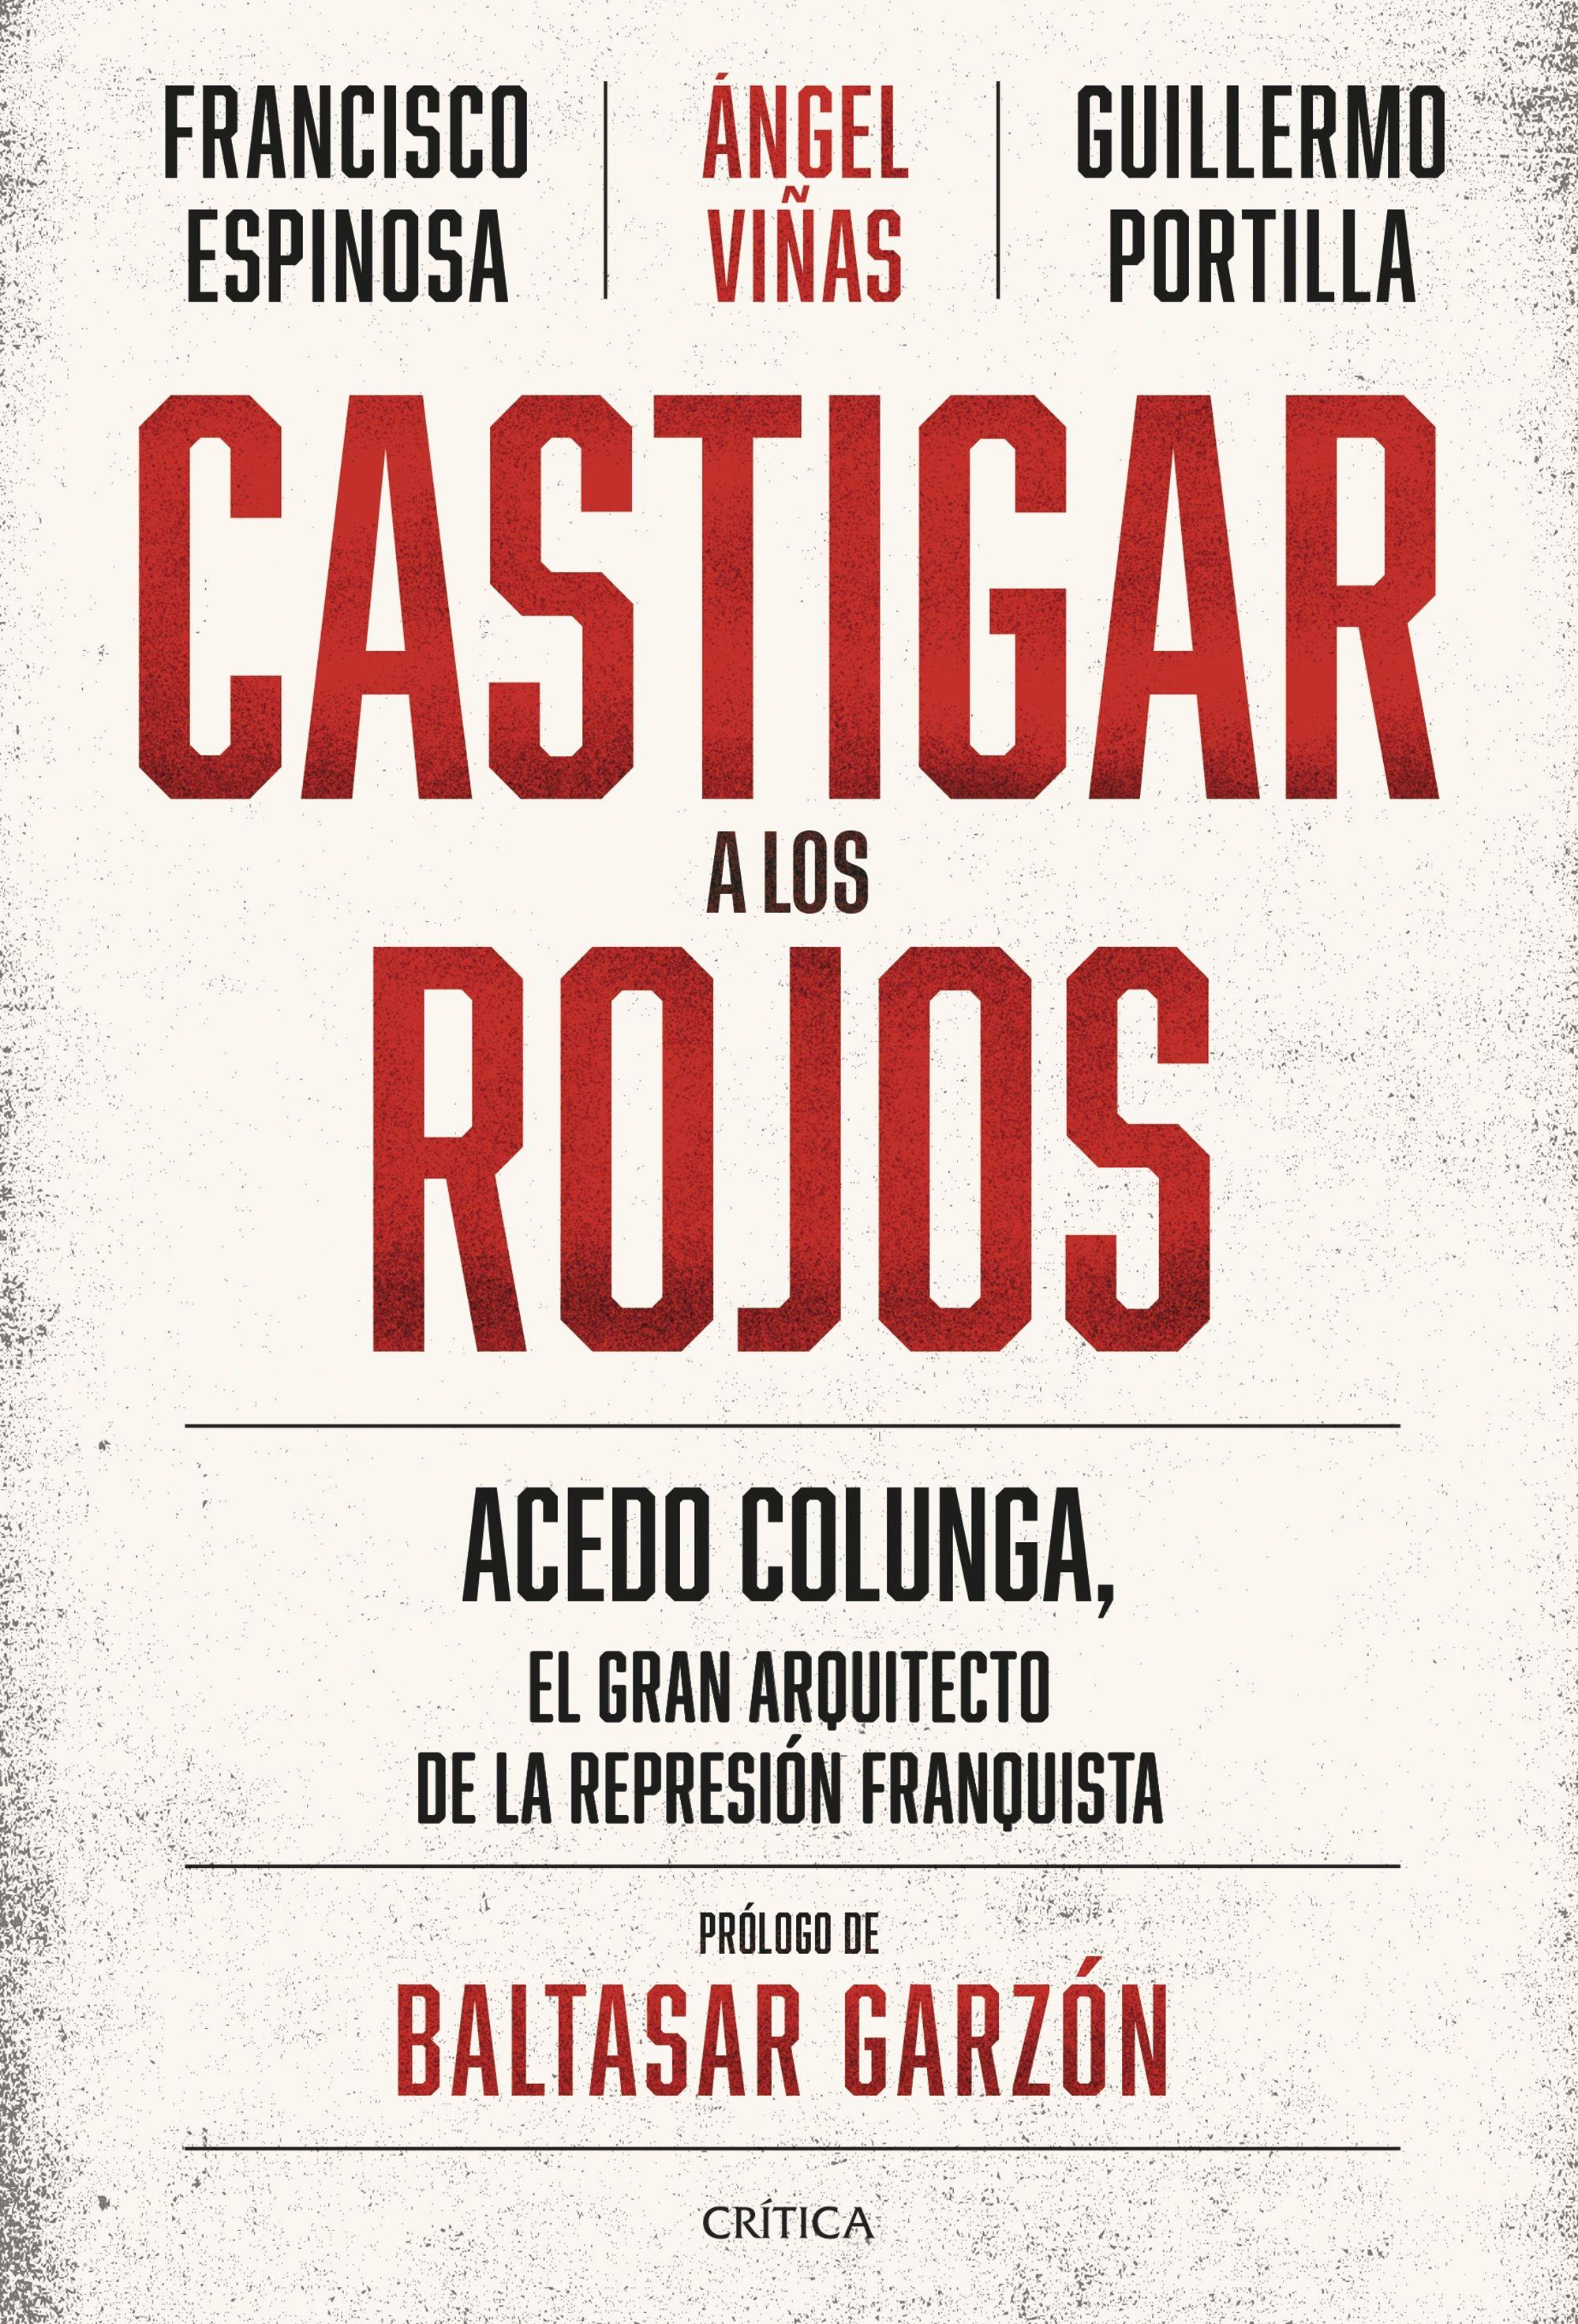 Castigar a los Rojos "Acedo Colunga, el Gran Arquitecto de la Represión Franquista"